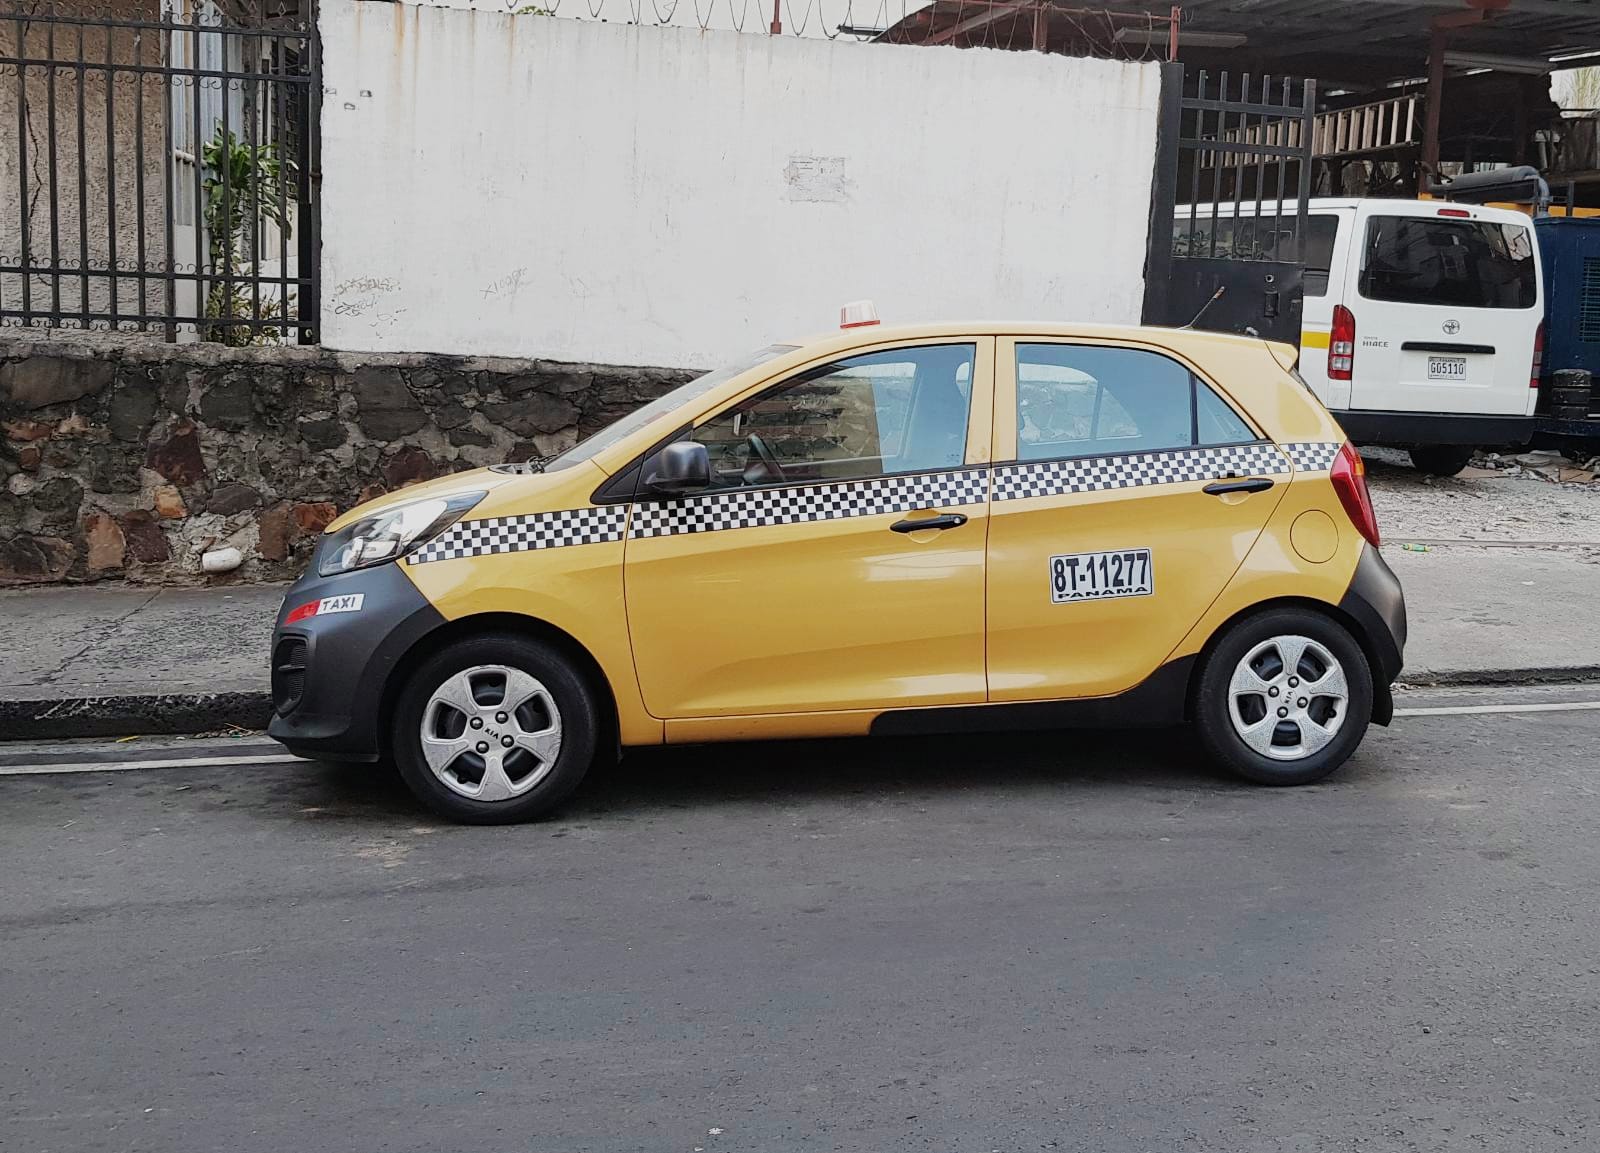 Aus dem Stadtbild nicht wegzudenken: die kleinen Taxis in Panama-City.